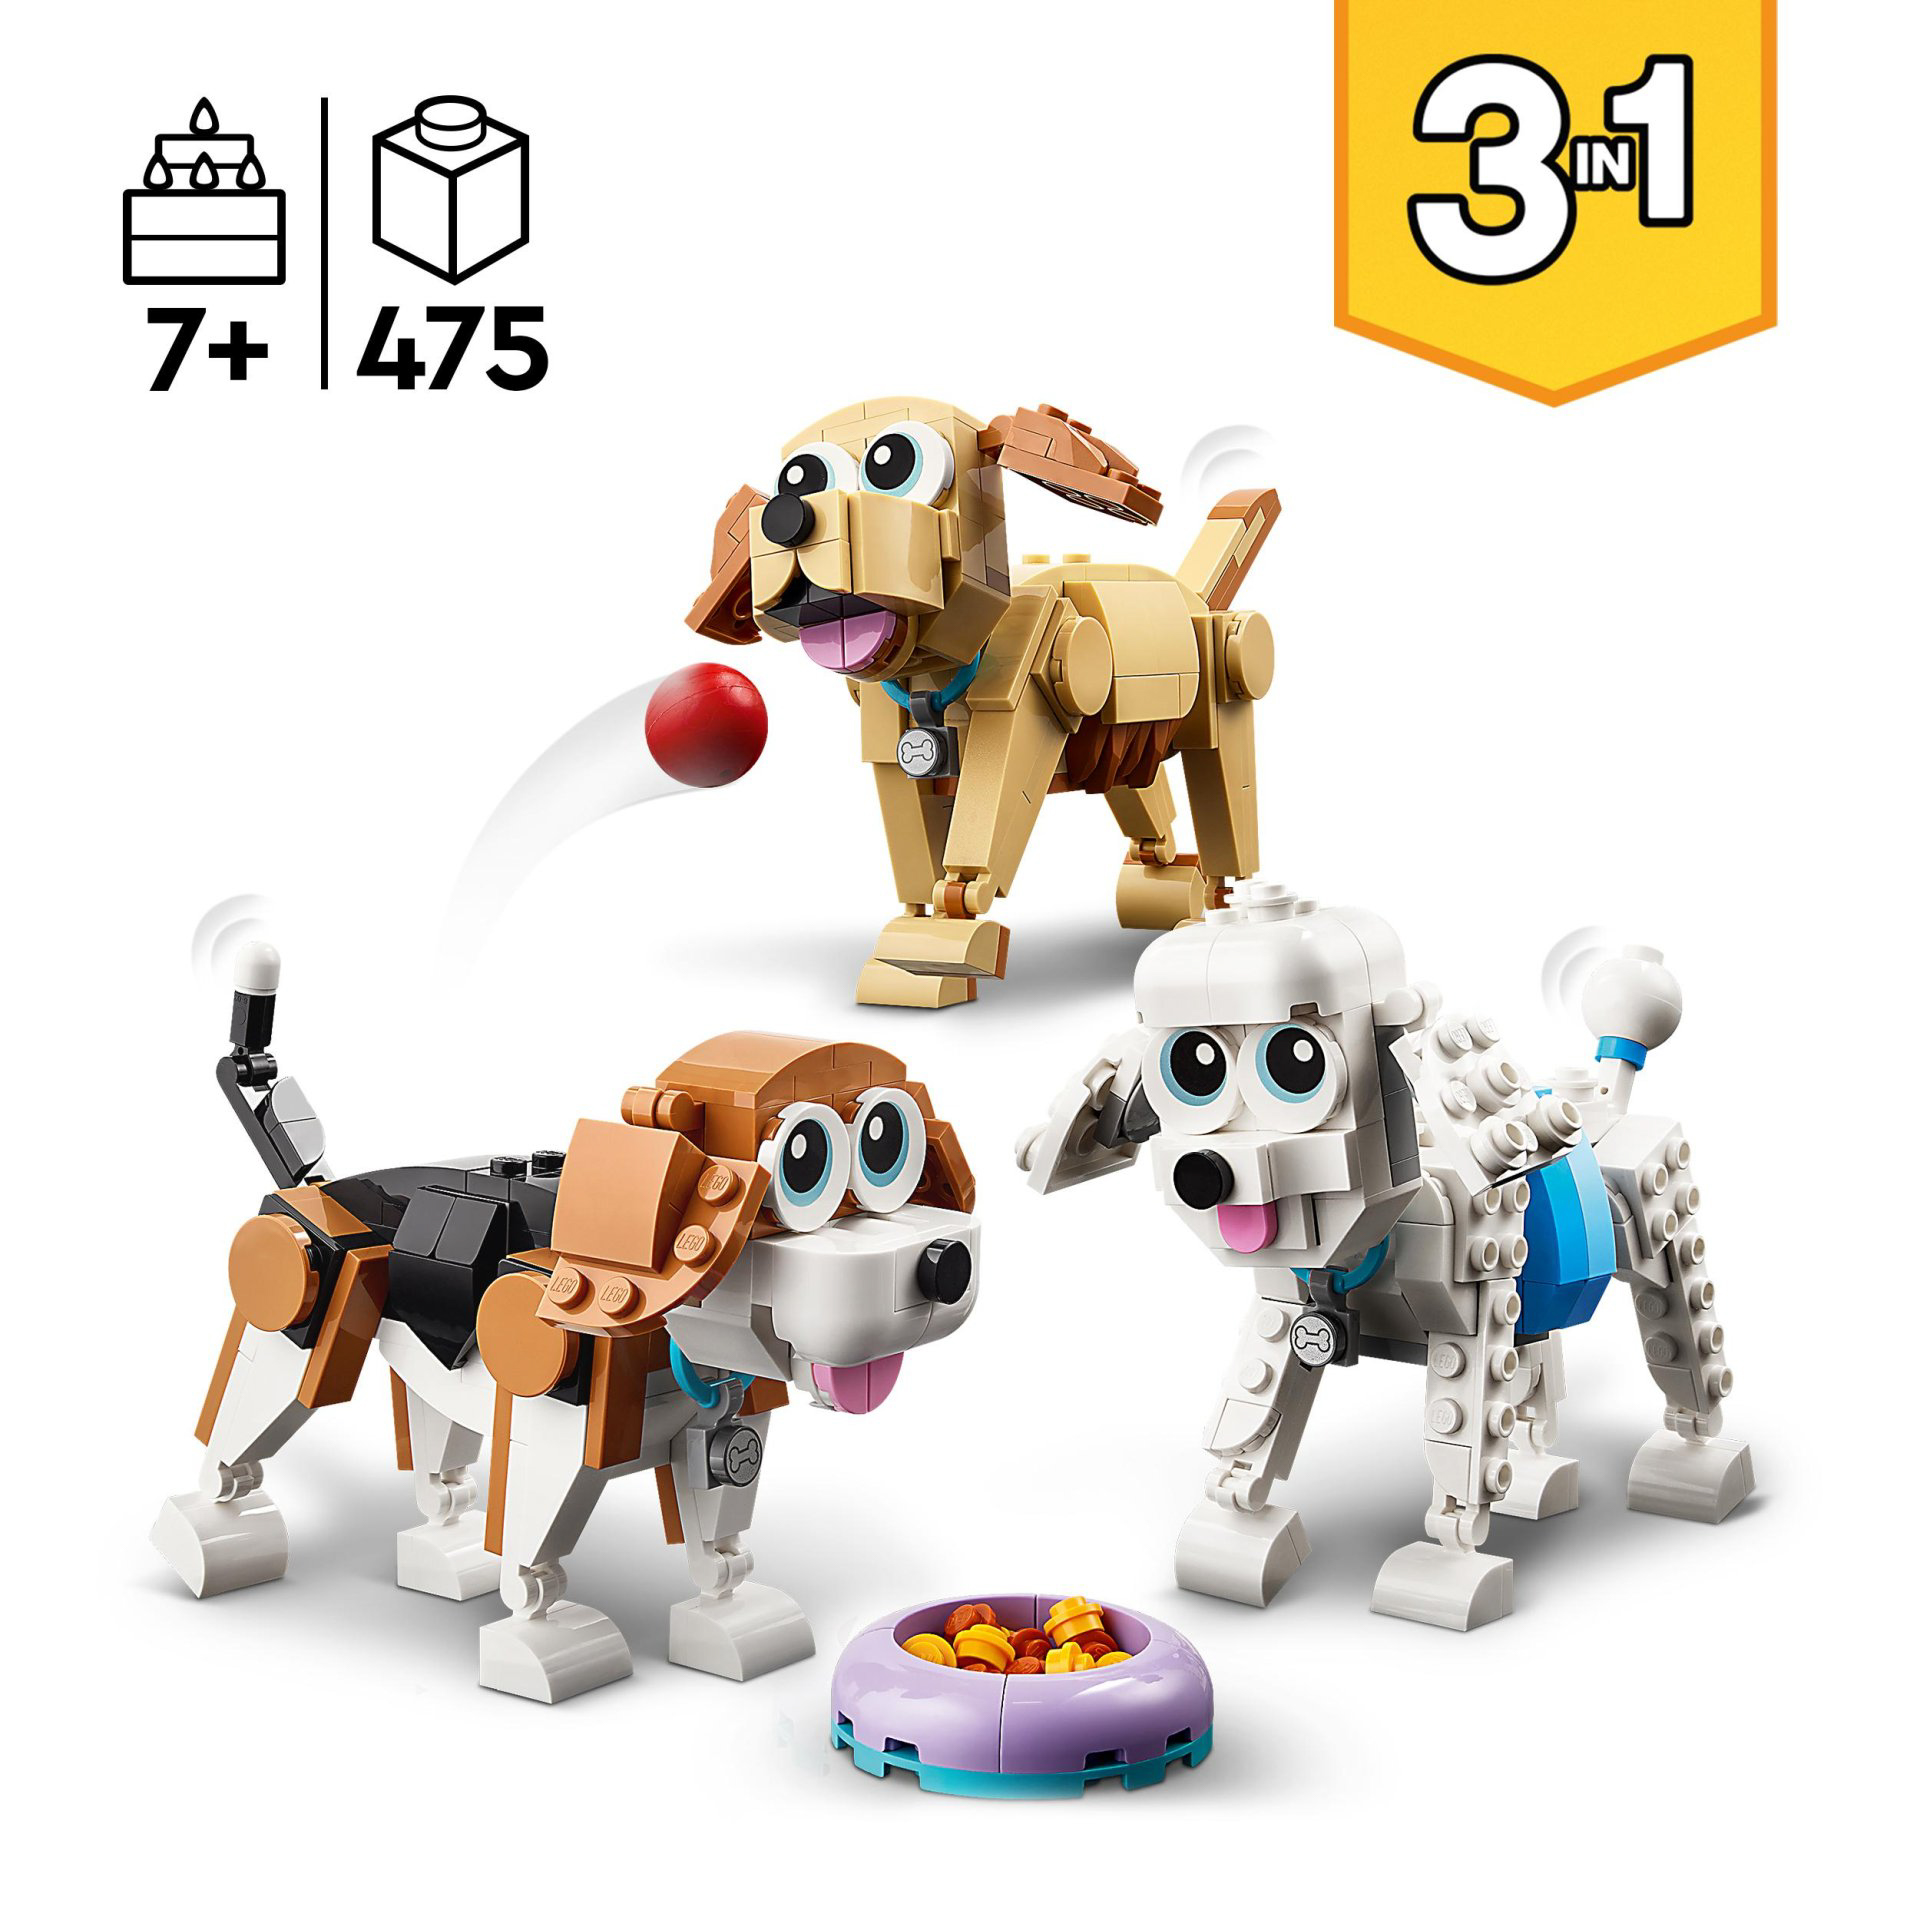 LEGO 31137 Creator Adorabili Cagnolini, Set 3 in 1 con Bassotto, Carlino, Barbon 31137, , large